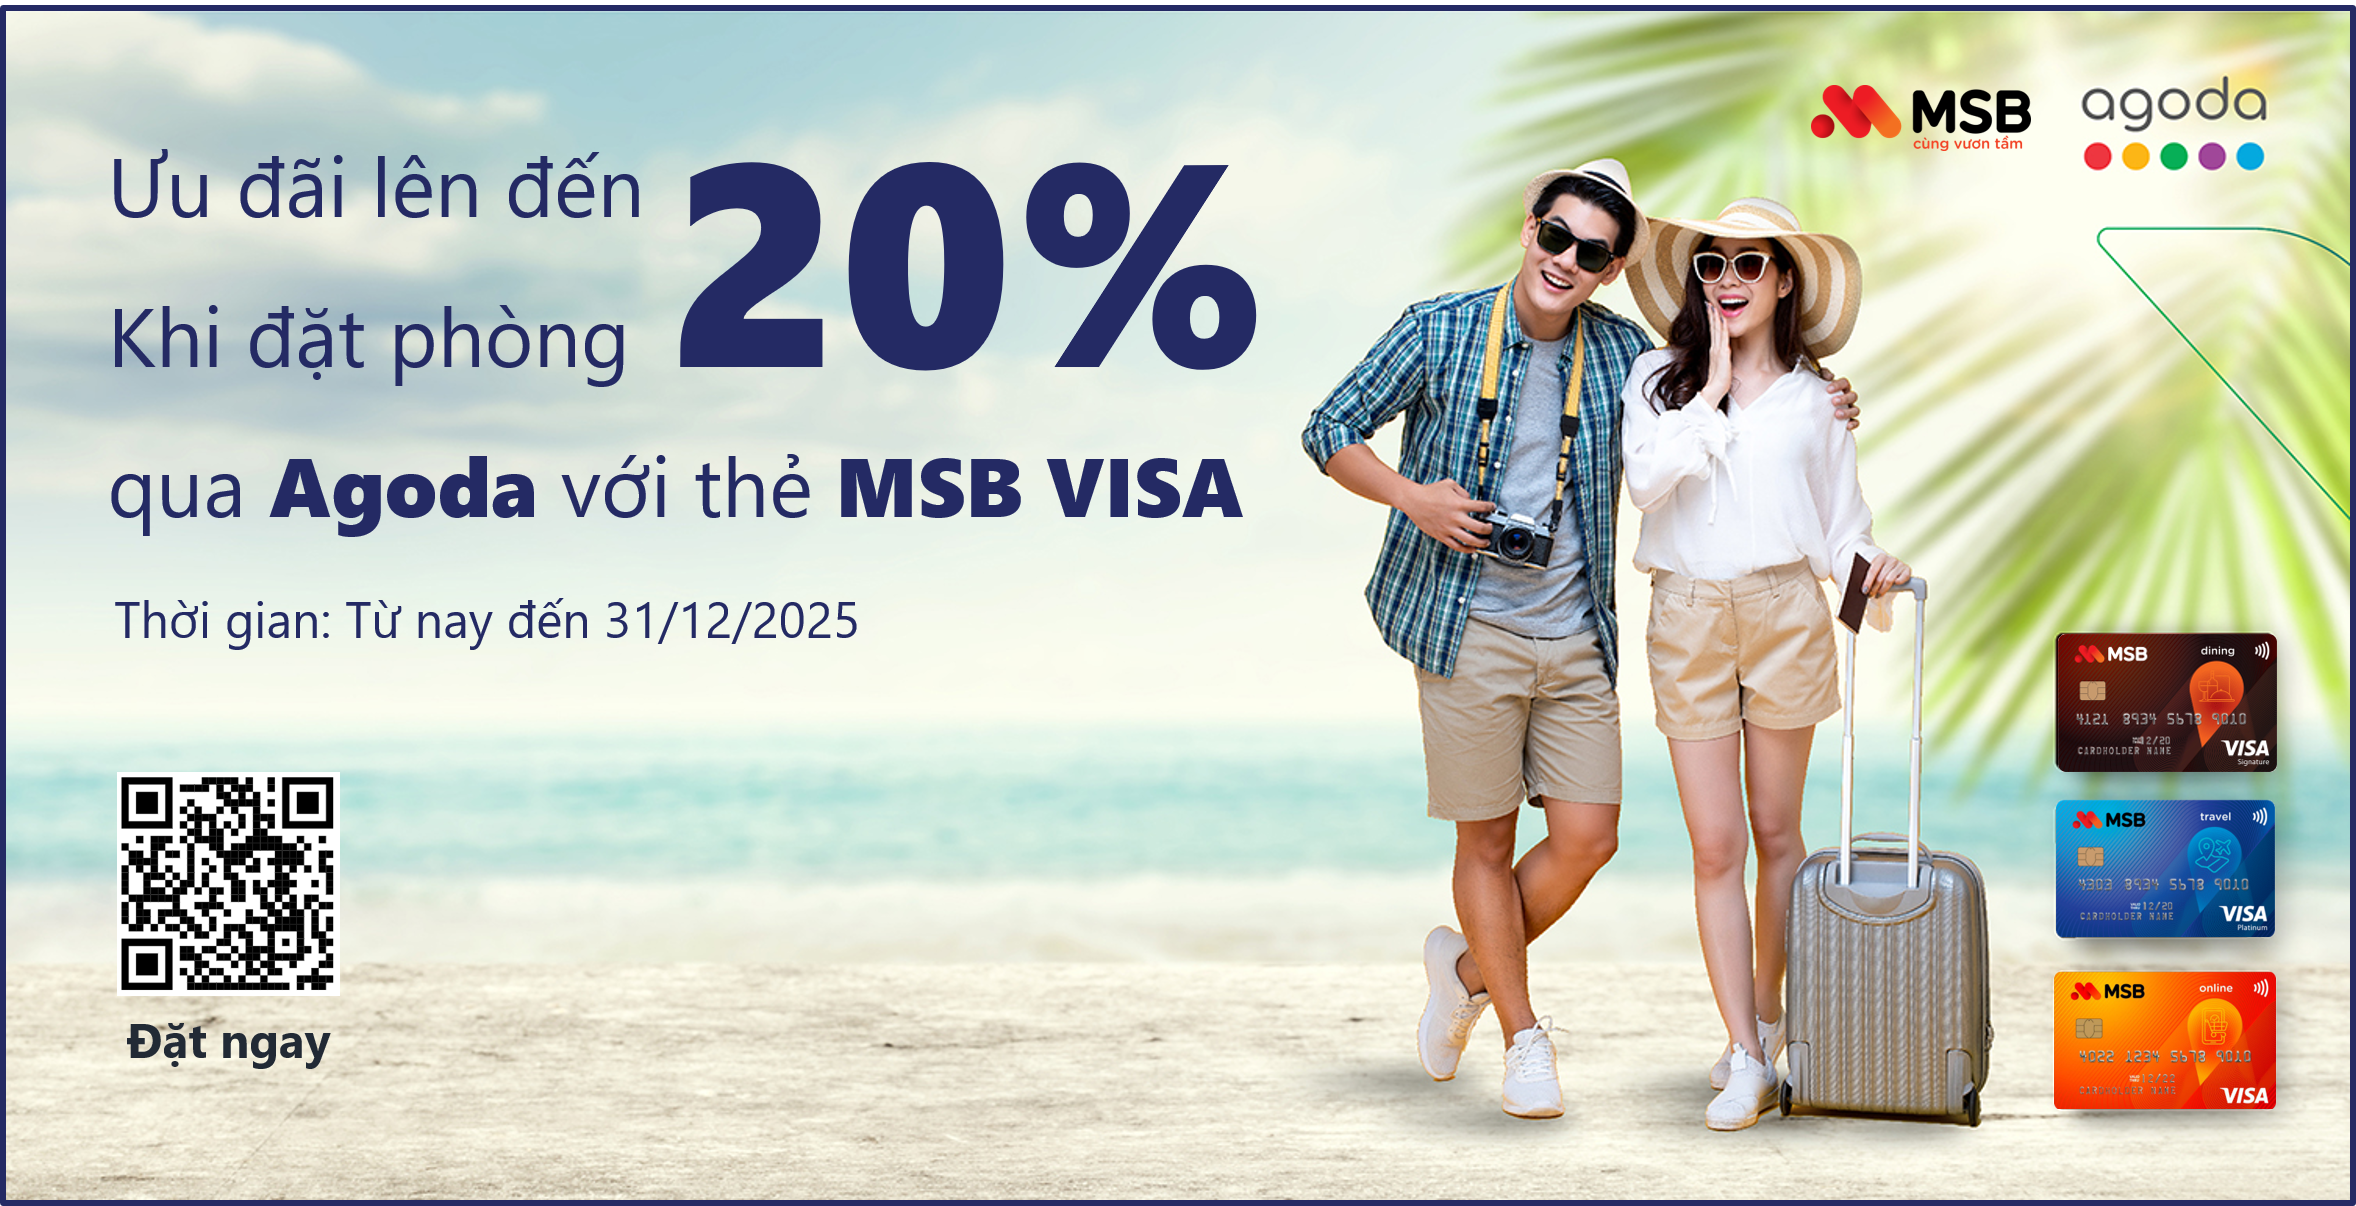 Agoda: Giảm lên đến 20% khi đặt phòng khách sạn thanh toán bằng thẻ MSB Visa